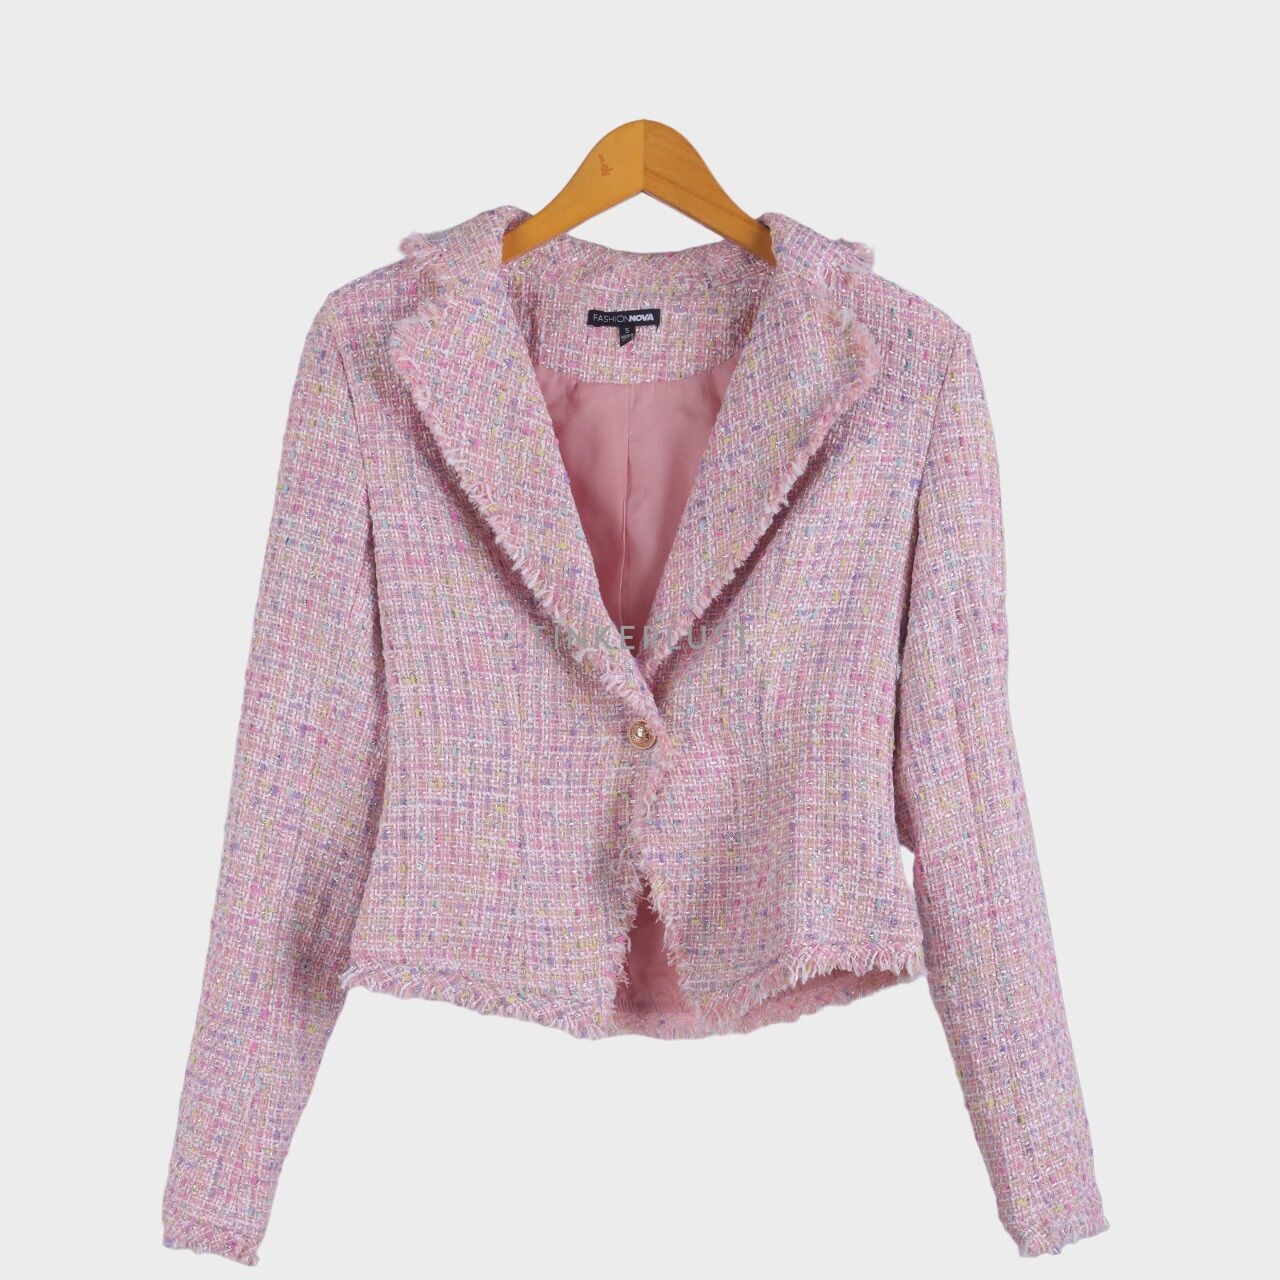 Fashion Nova Pink Blazer